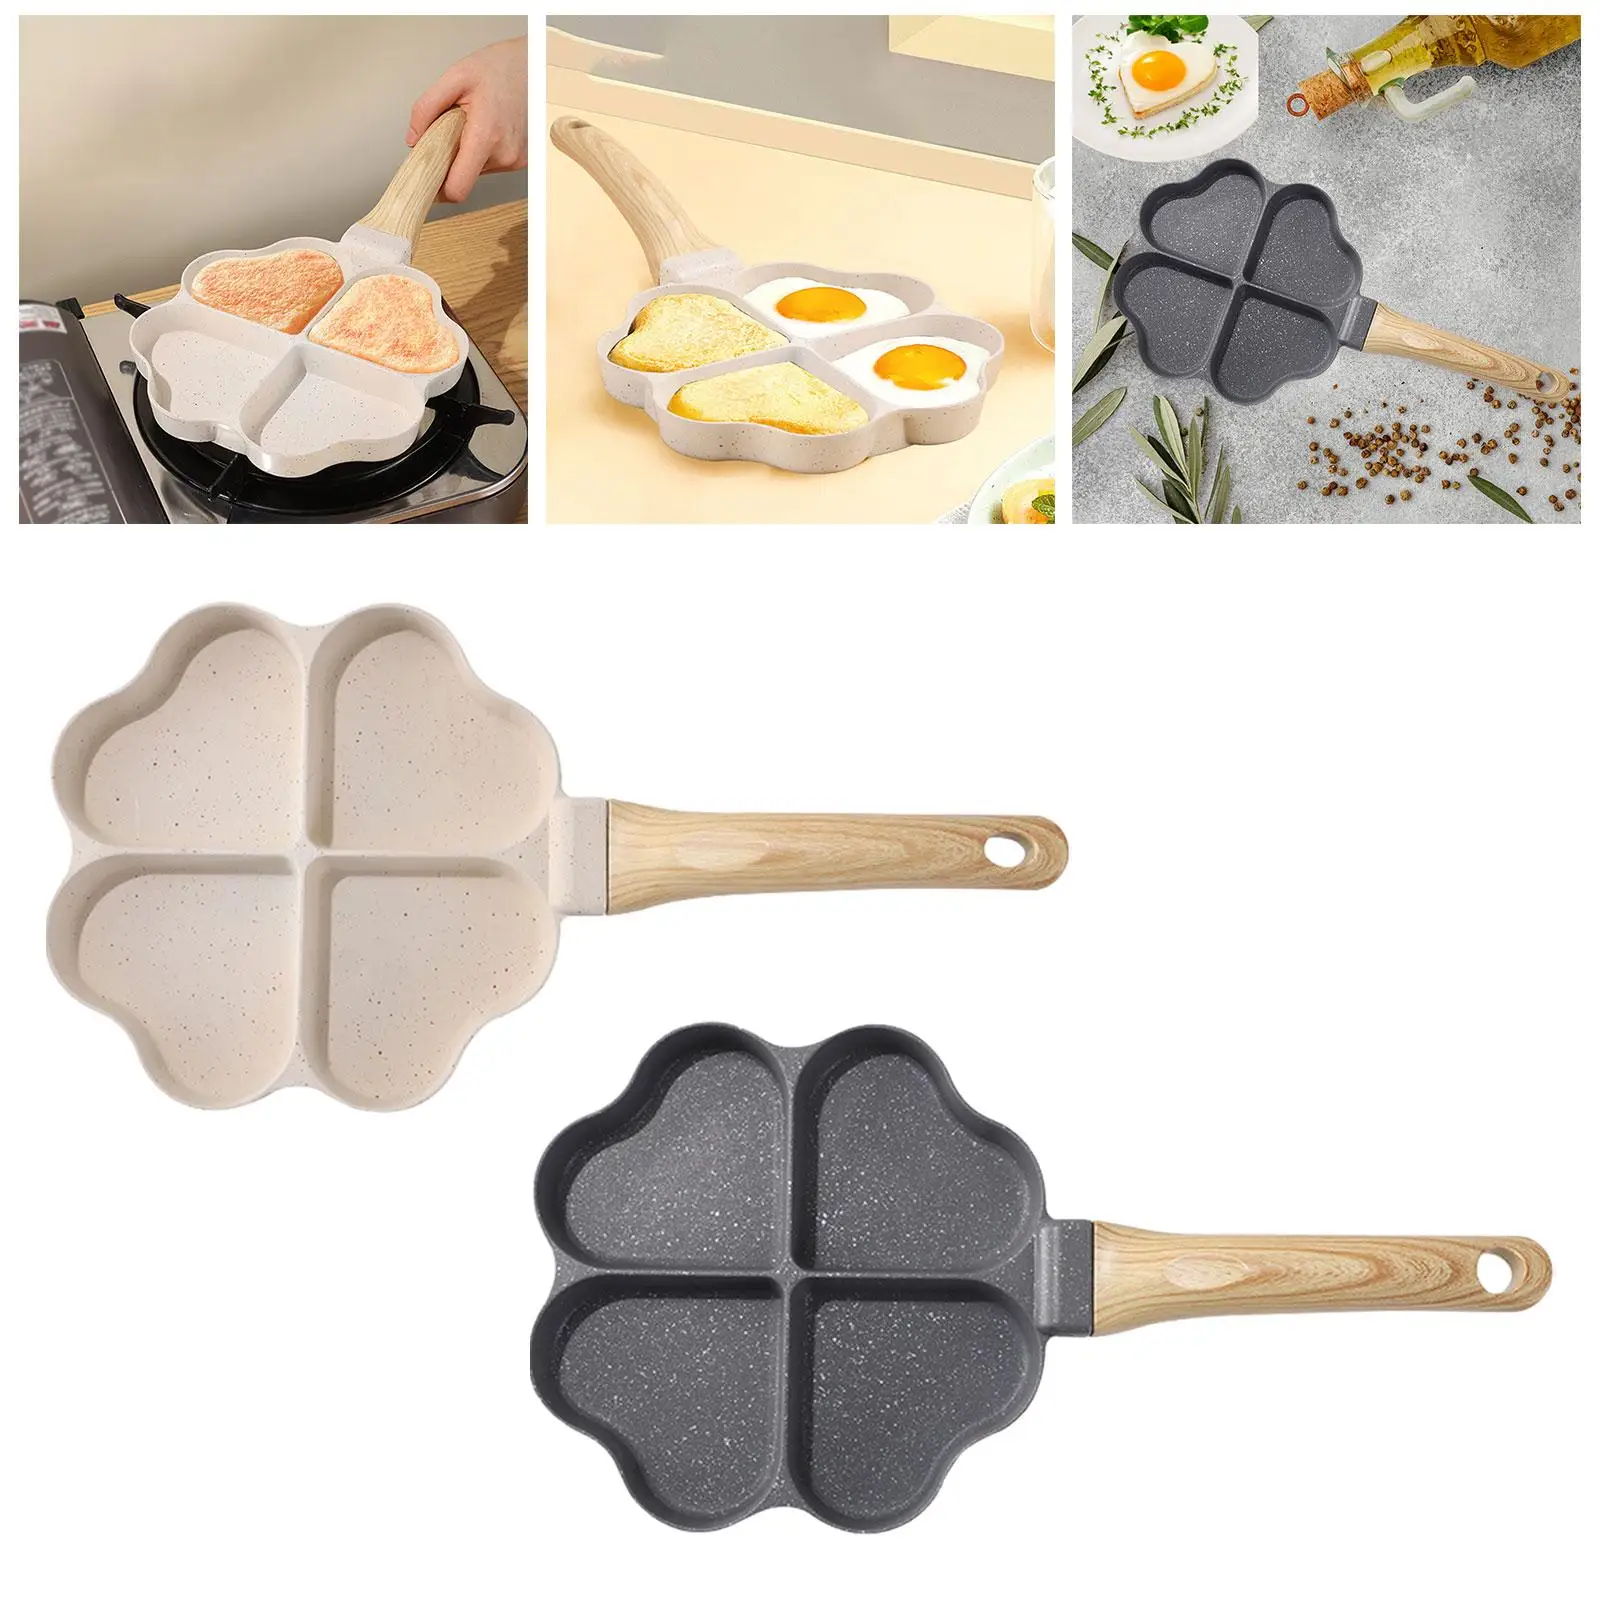 Mini Pancake Pan Anti Scald Wood Handle Kitchen Cooking Tool Omelet Pan Egg Frying Pan for Baking Cooking Frying Breakfast Steak